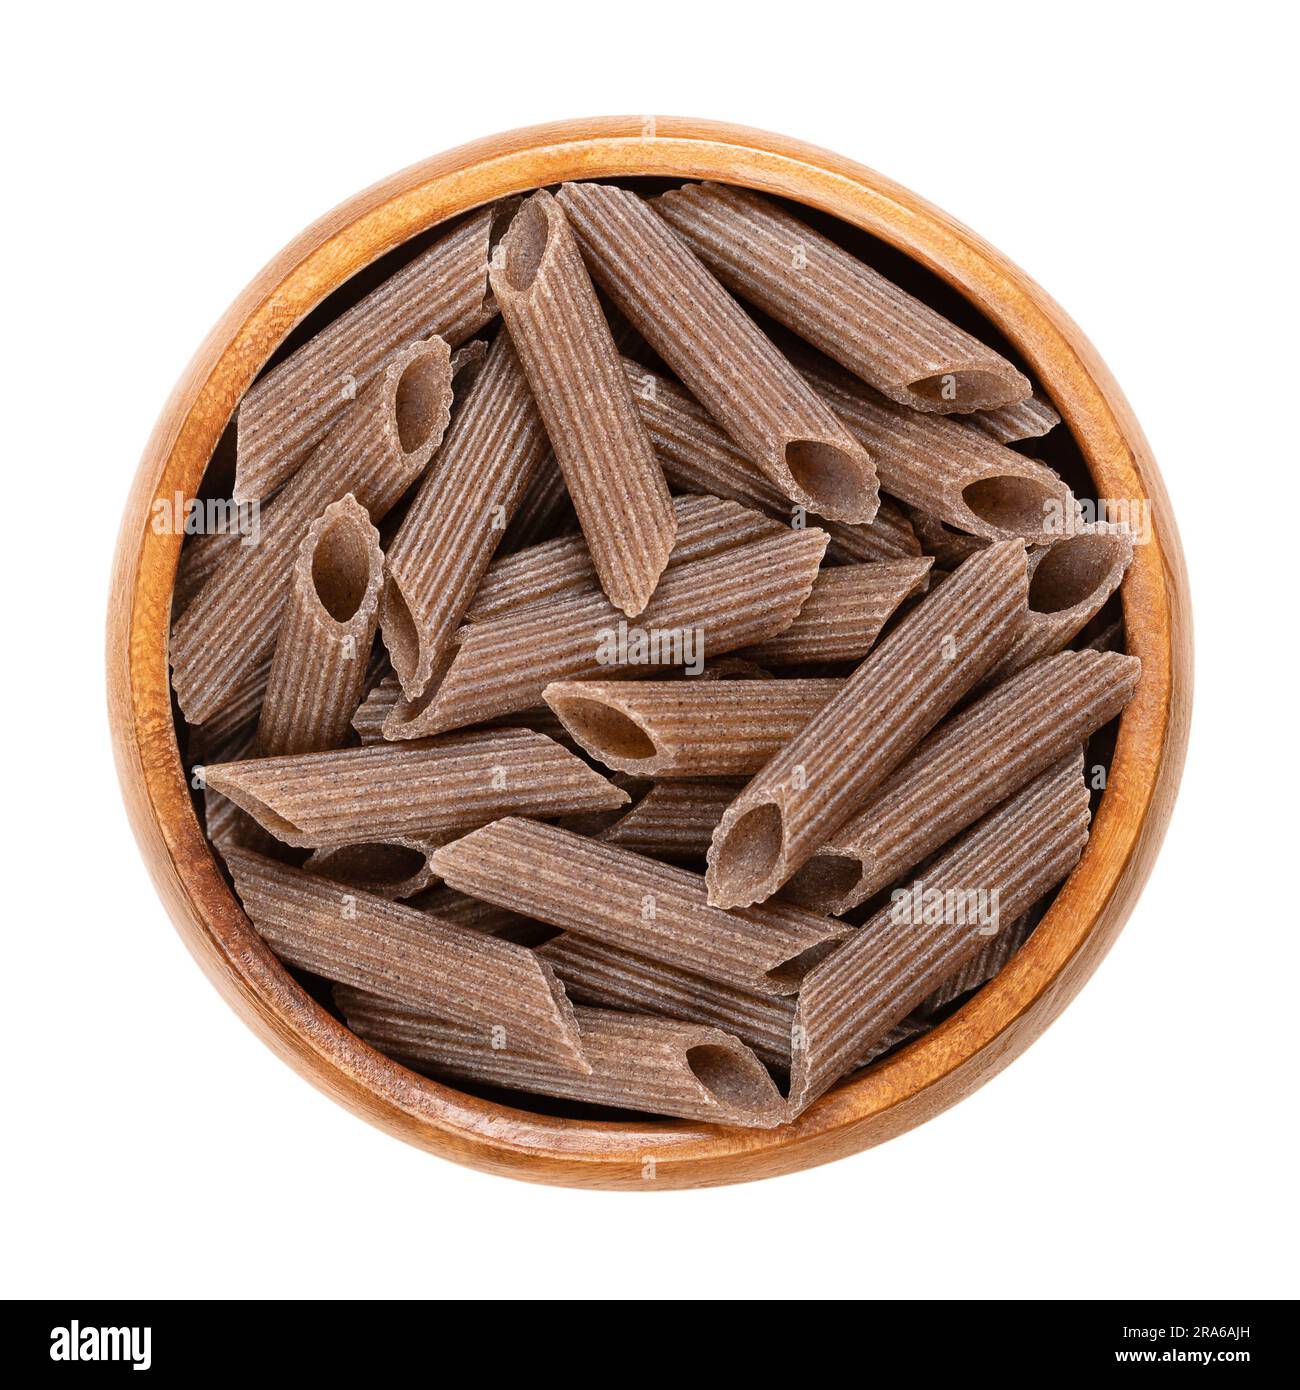 Penne di grano saraceno, pasta integrale senza glutine, in un recipiente di legno. Spaghetti marrone scuro, realizzati in pura semola di grano saraceno, estrusi in forma cilindrica. Foto Stock